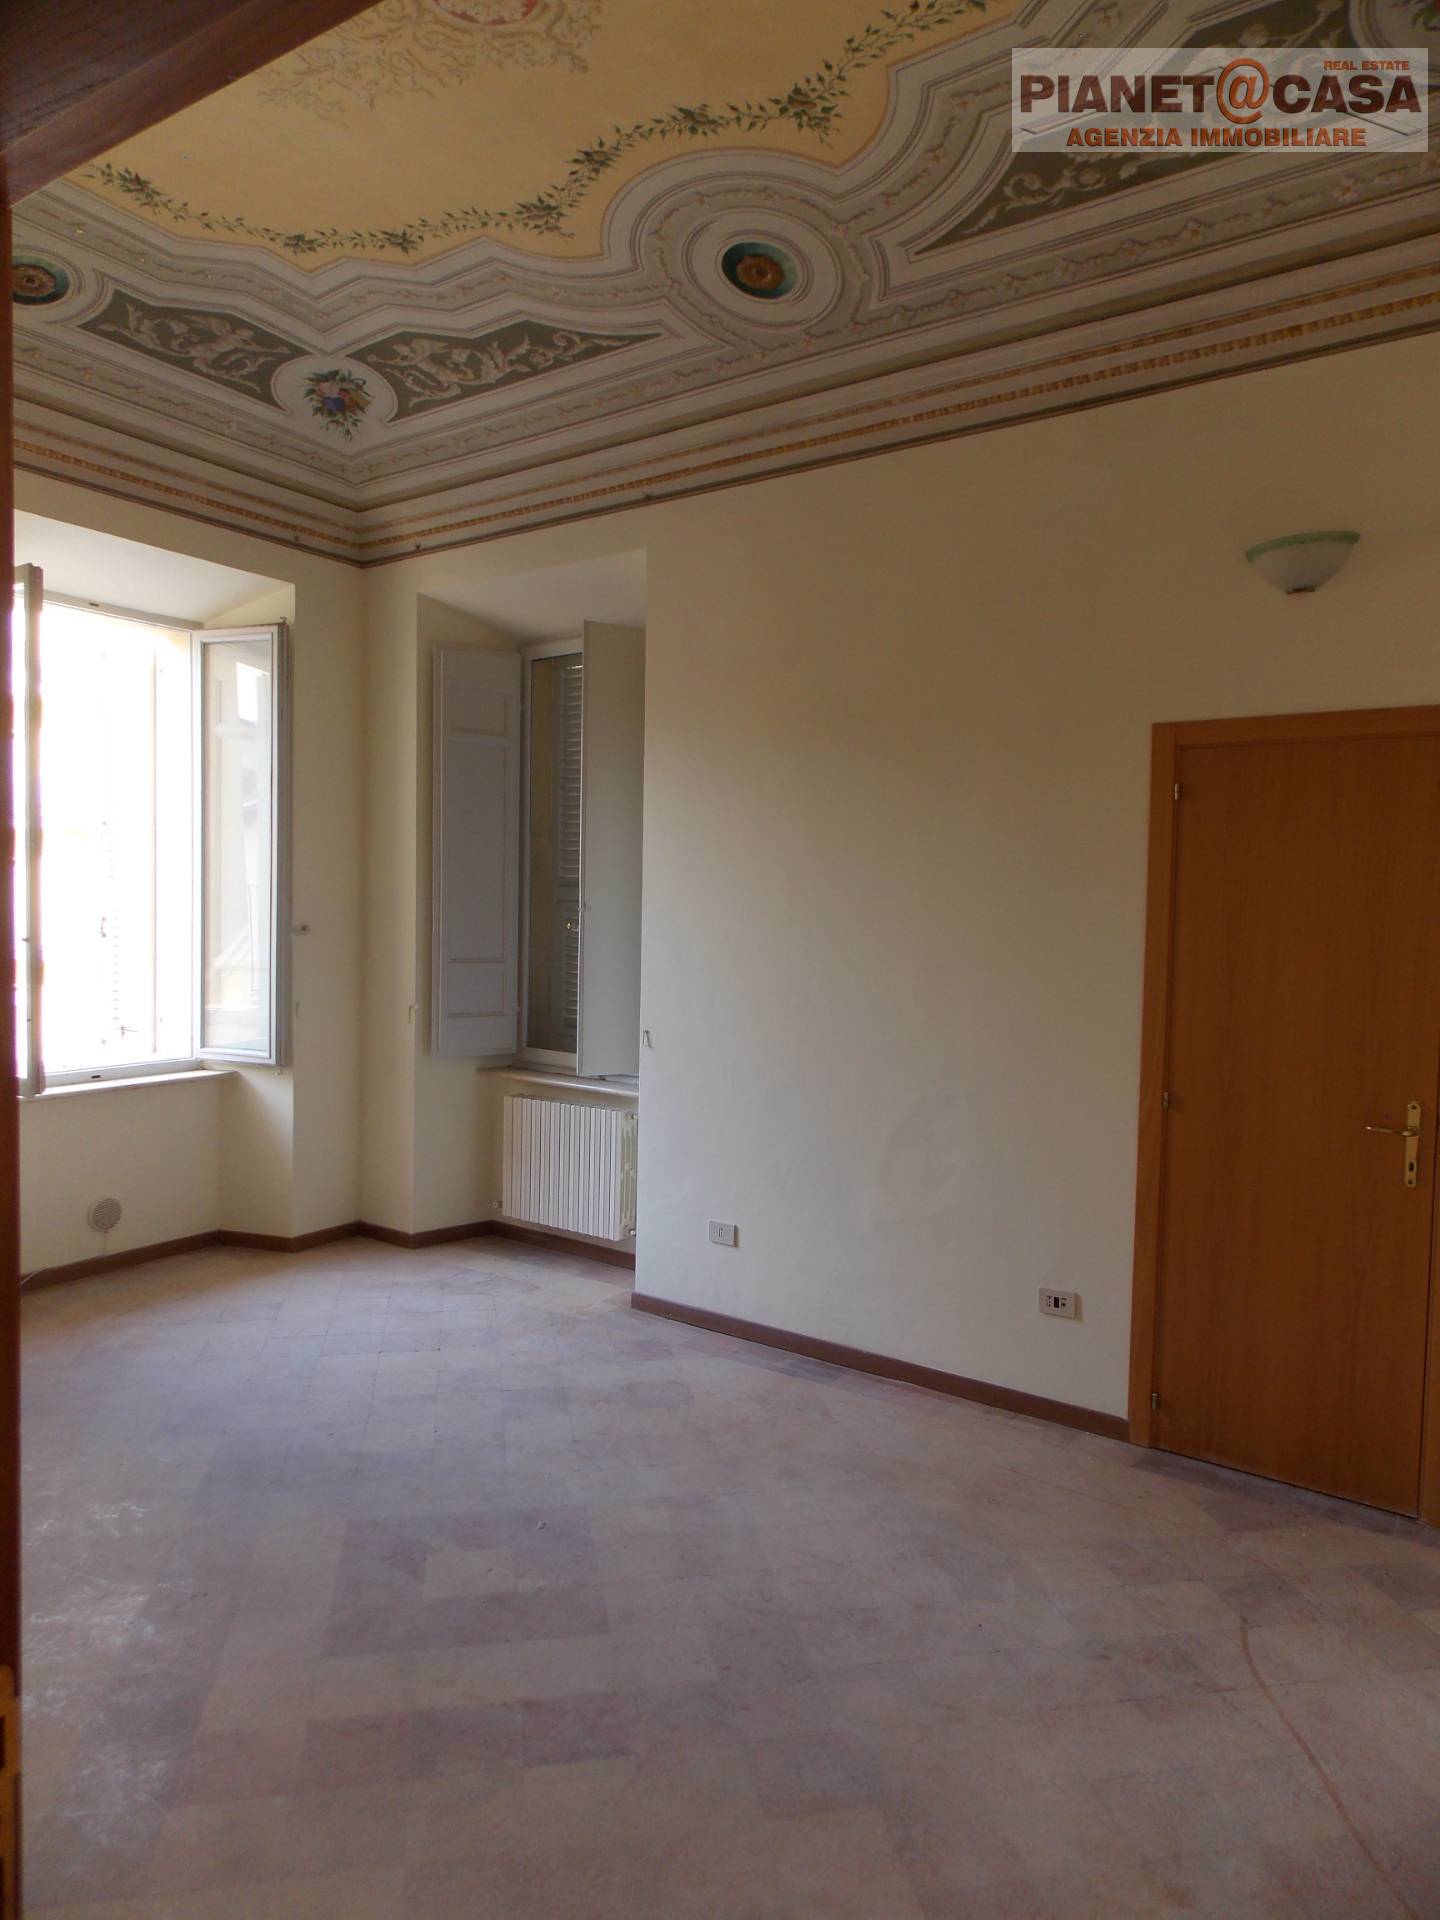 Appartamento in vendita a Ascoli Piceno, 5 locali, zona Località: CENTRO, prezzo € 240.000 | PortaleAgenzieImmobiliari.it